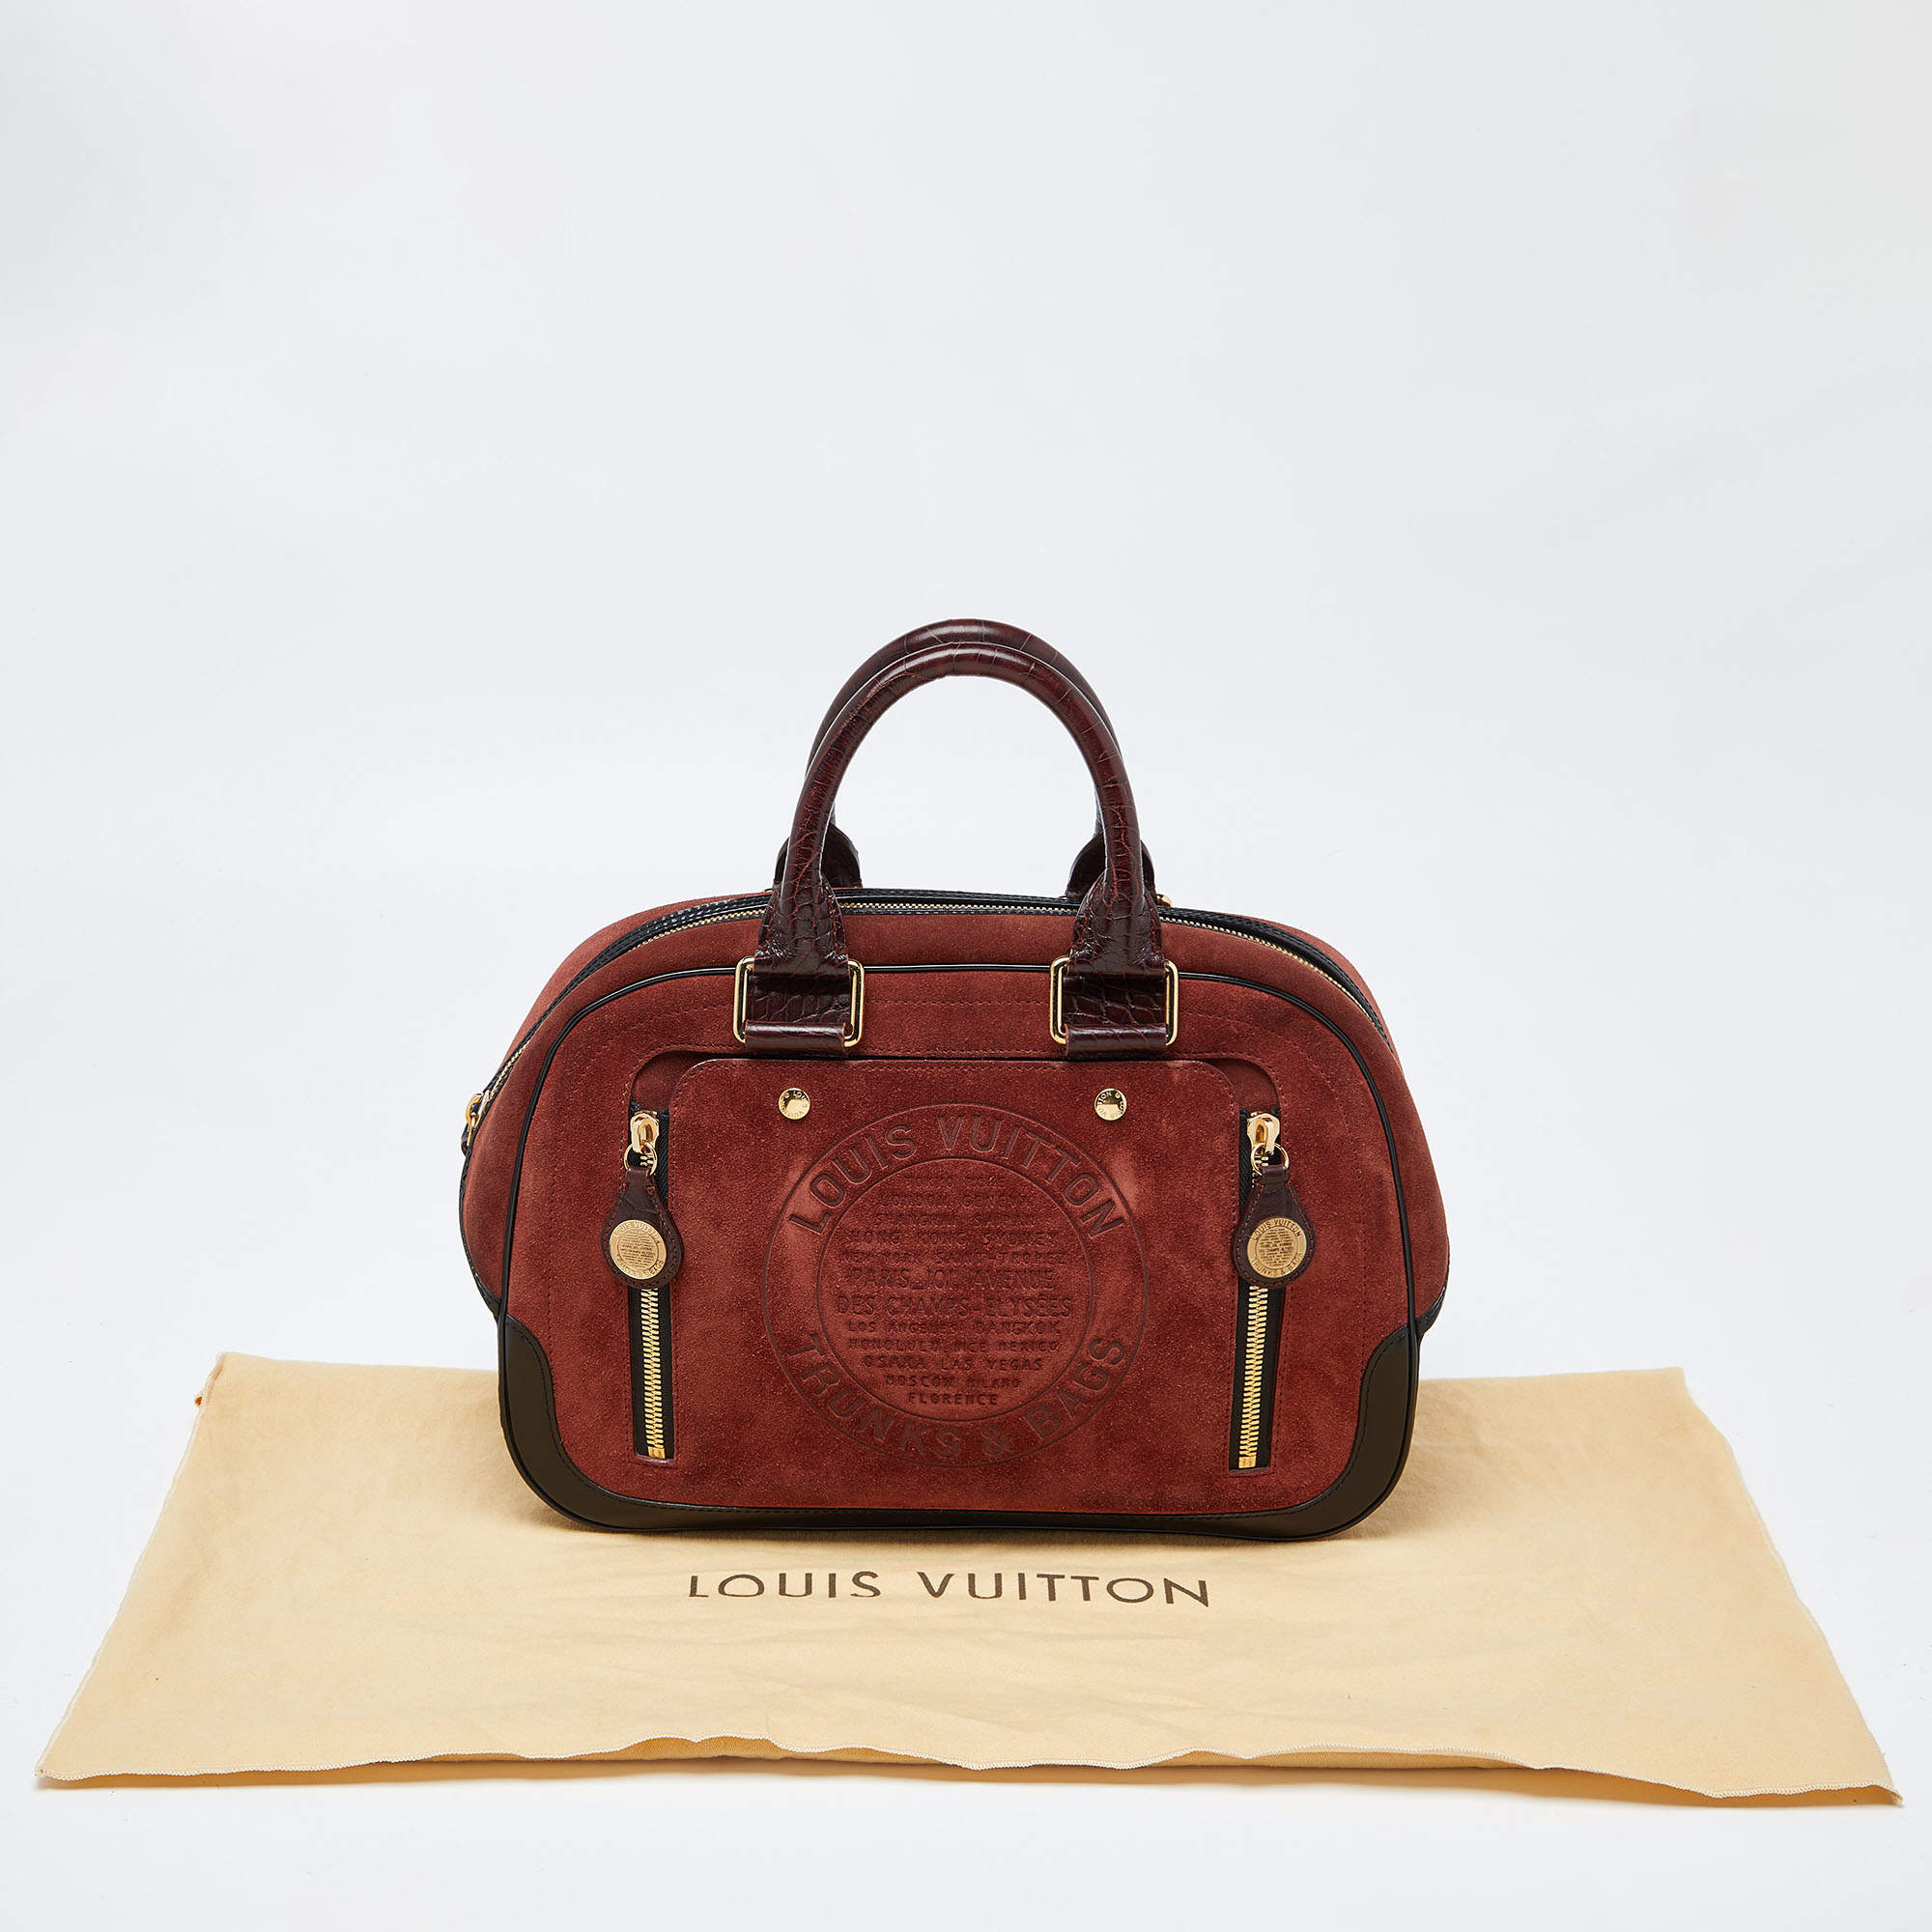 Louis Vuitton Louis Vuitton Stamp Bag Pm Handbag Suede Leather